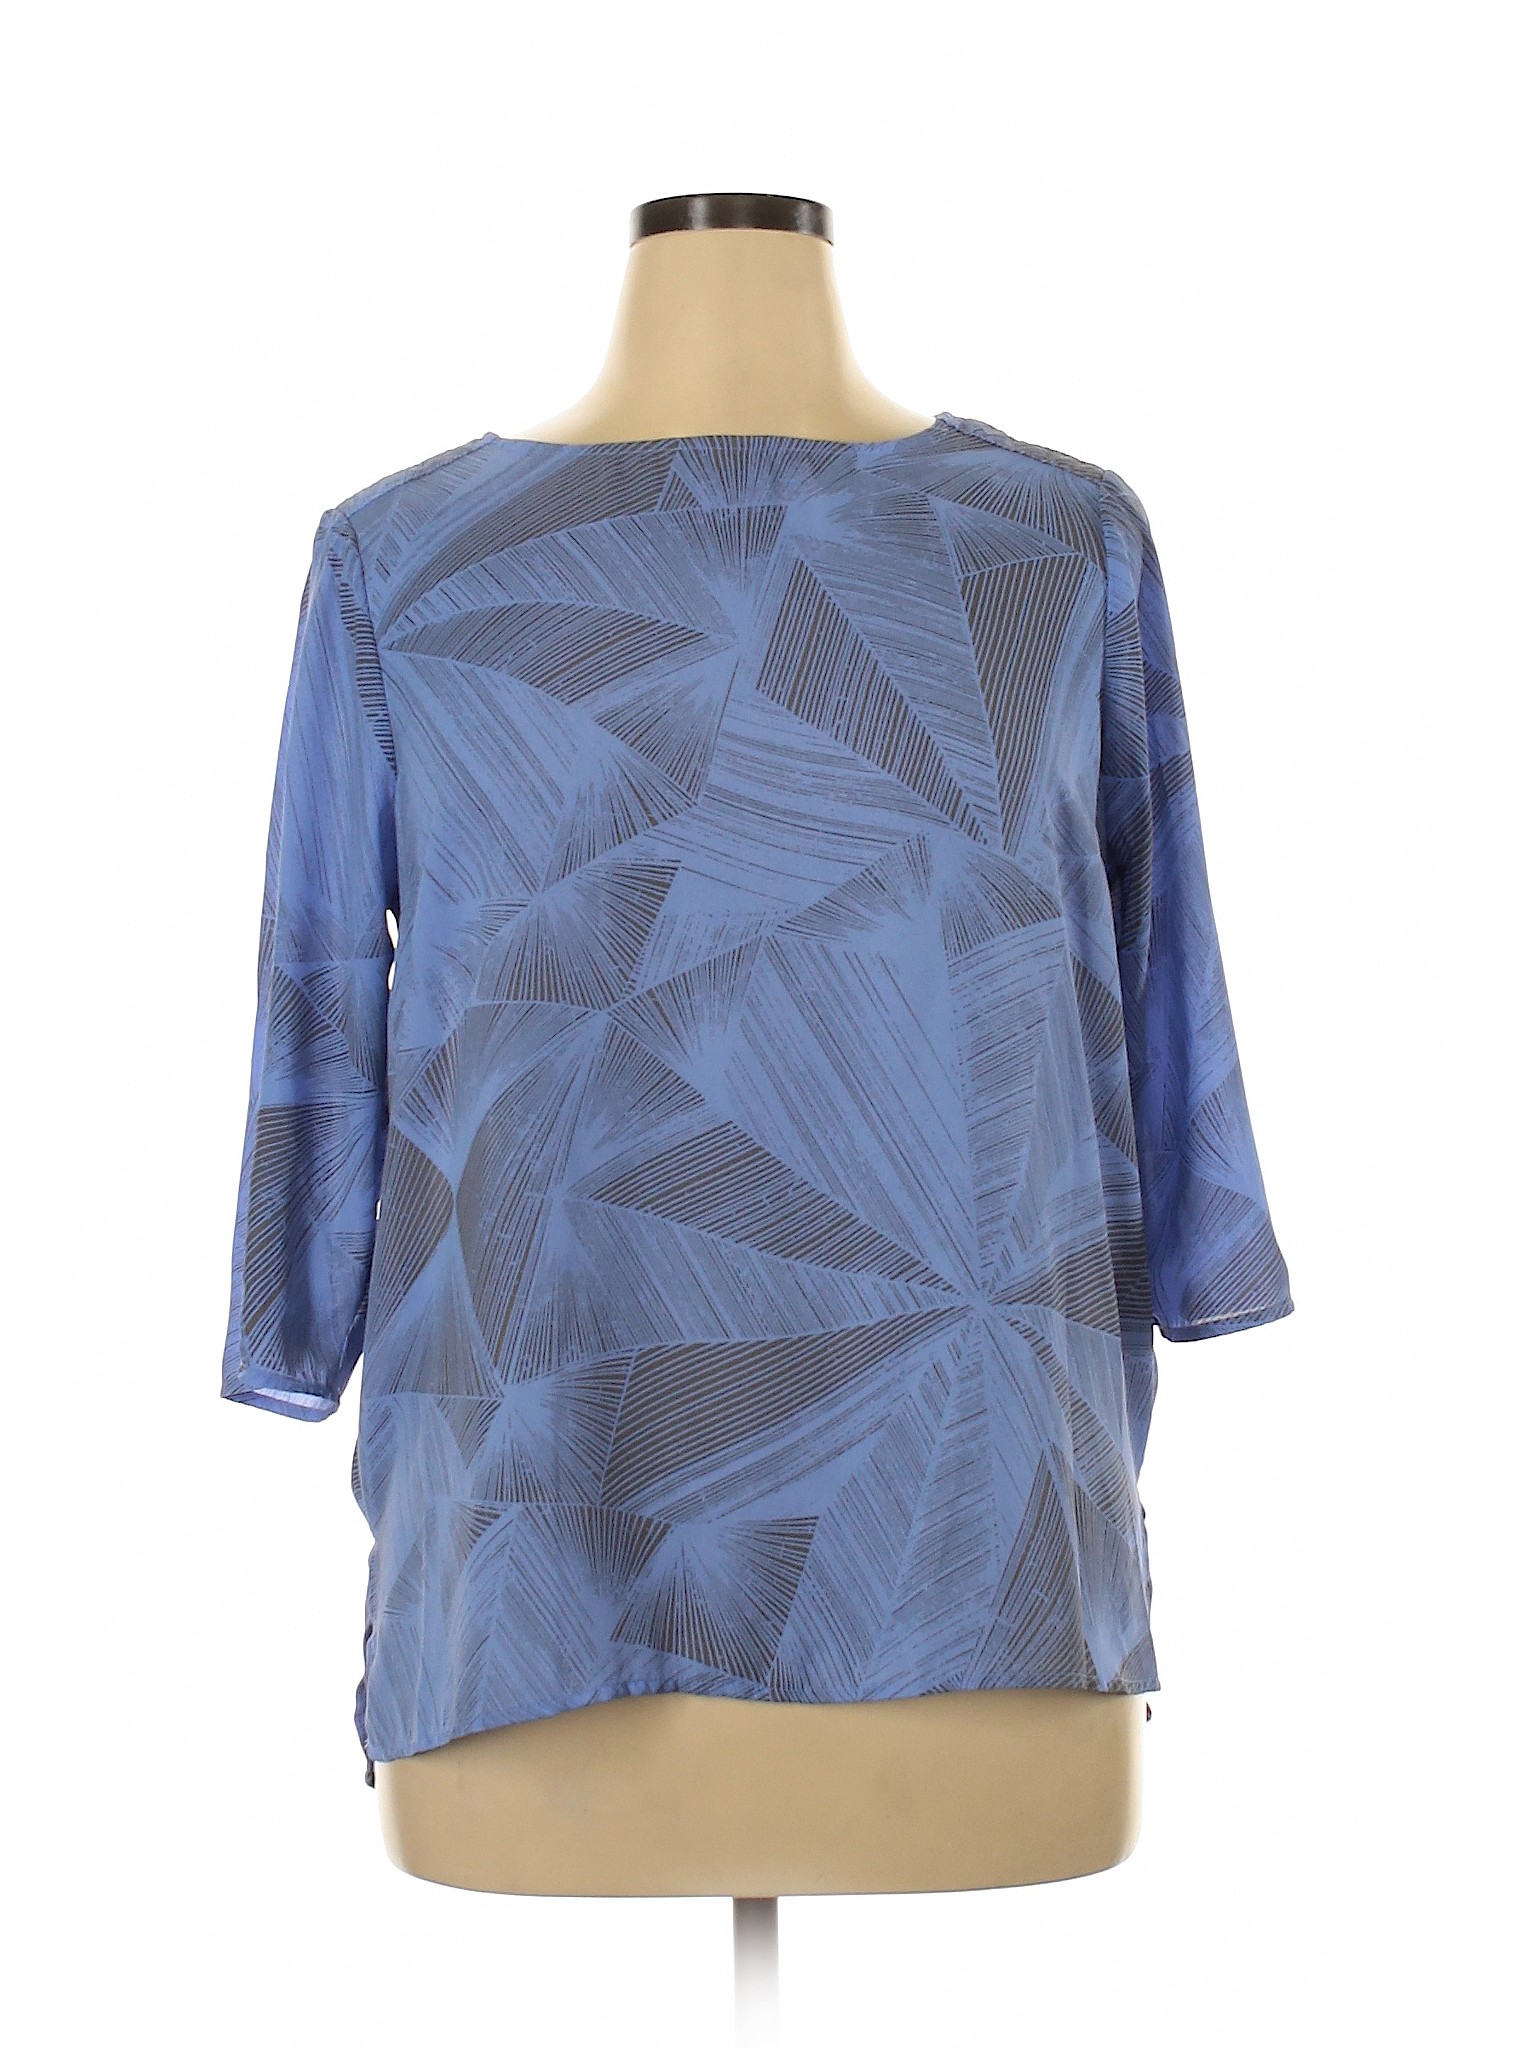 Apt. 9 Women Blue Long Sleeve Blouse L | eBay